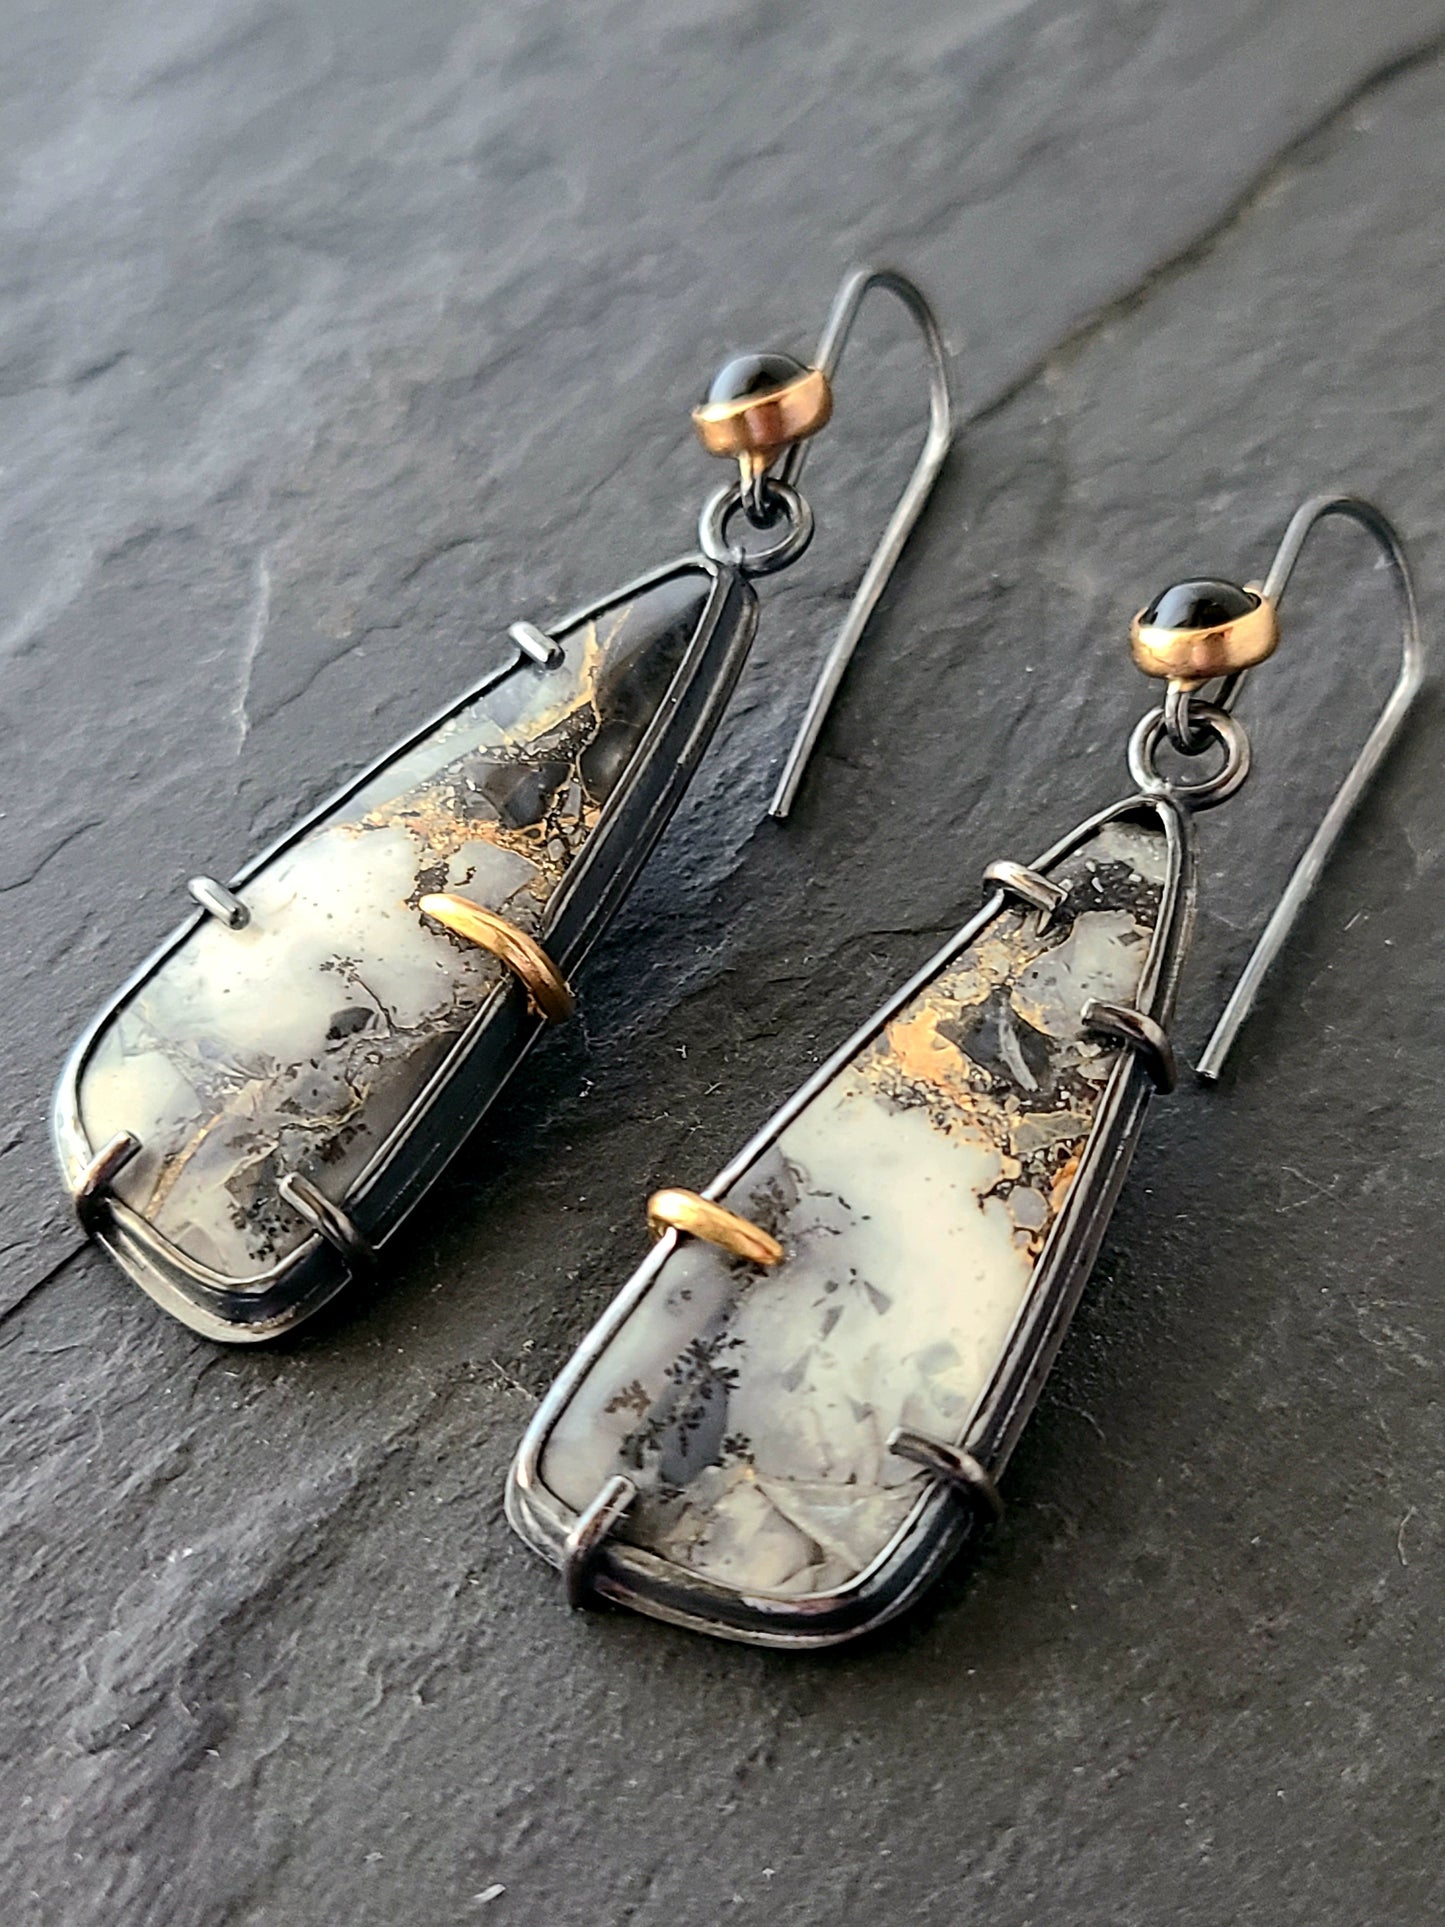 Maligano Jasper and Onyx earrings-SS/14k